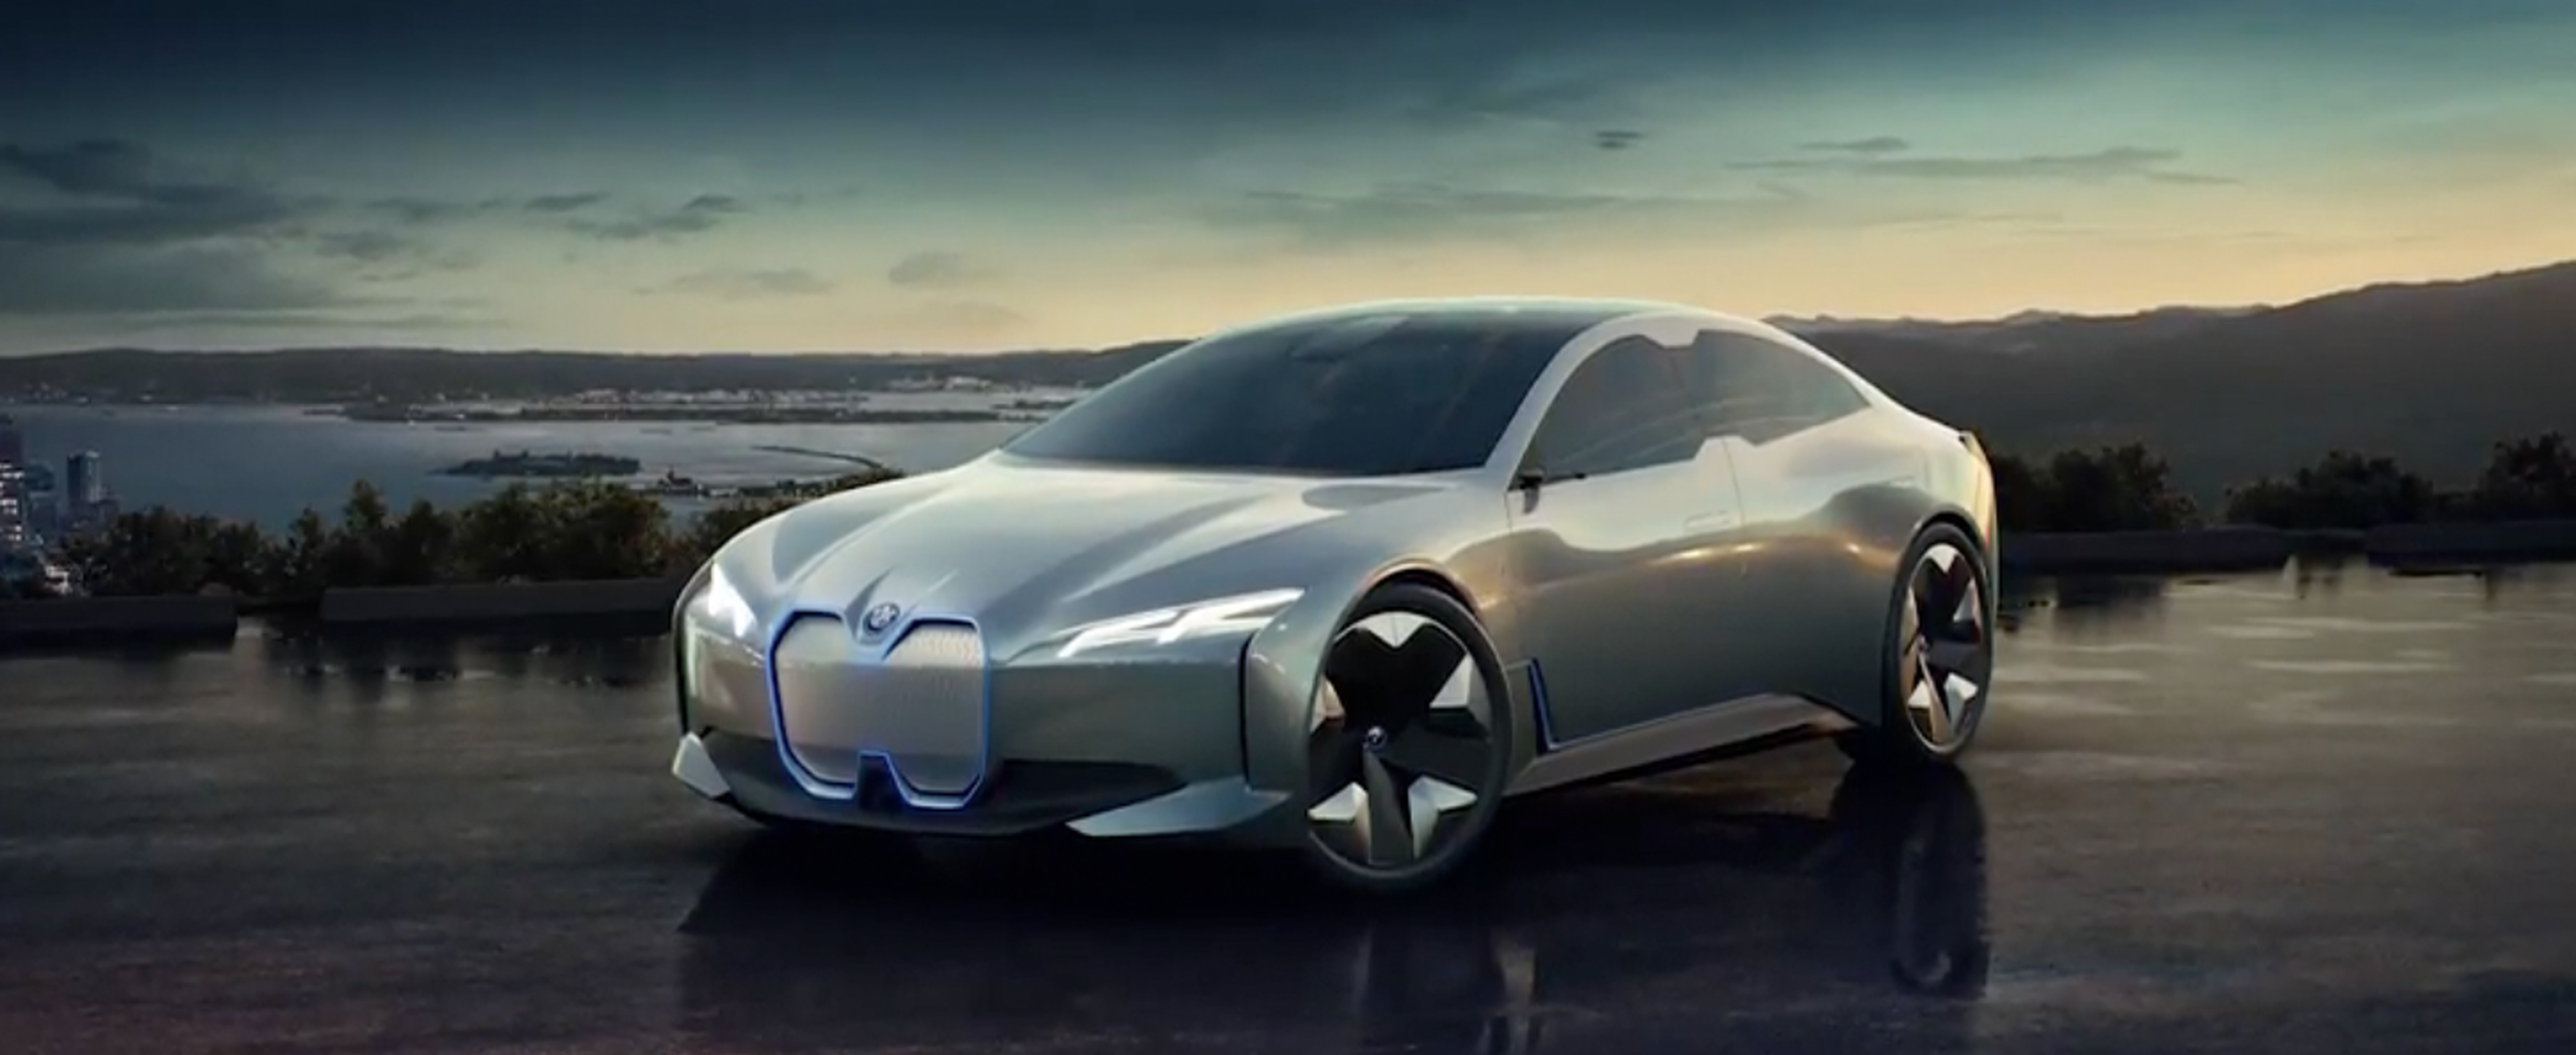 VÍDEO: ¿Te imaginas que este coche se hiciese realidad?